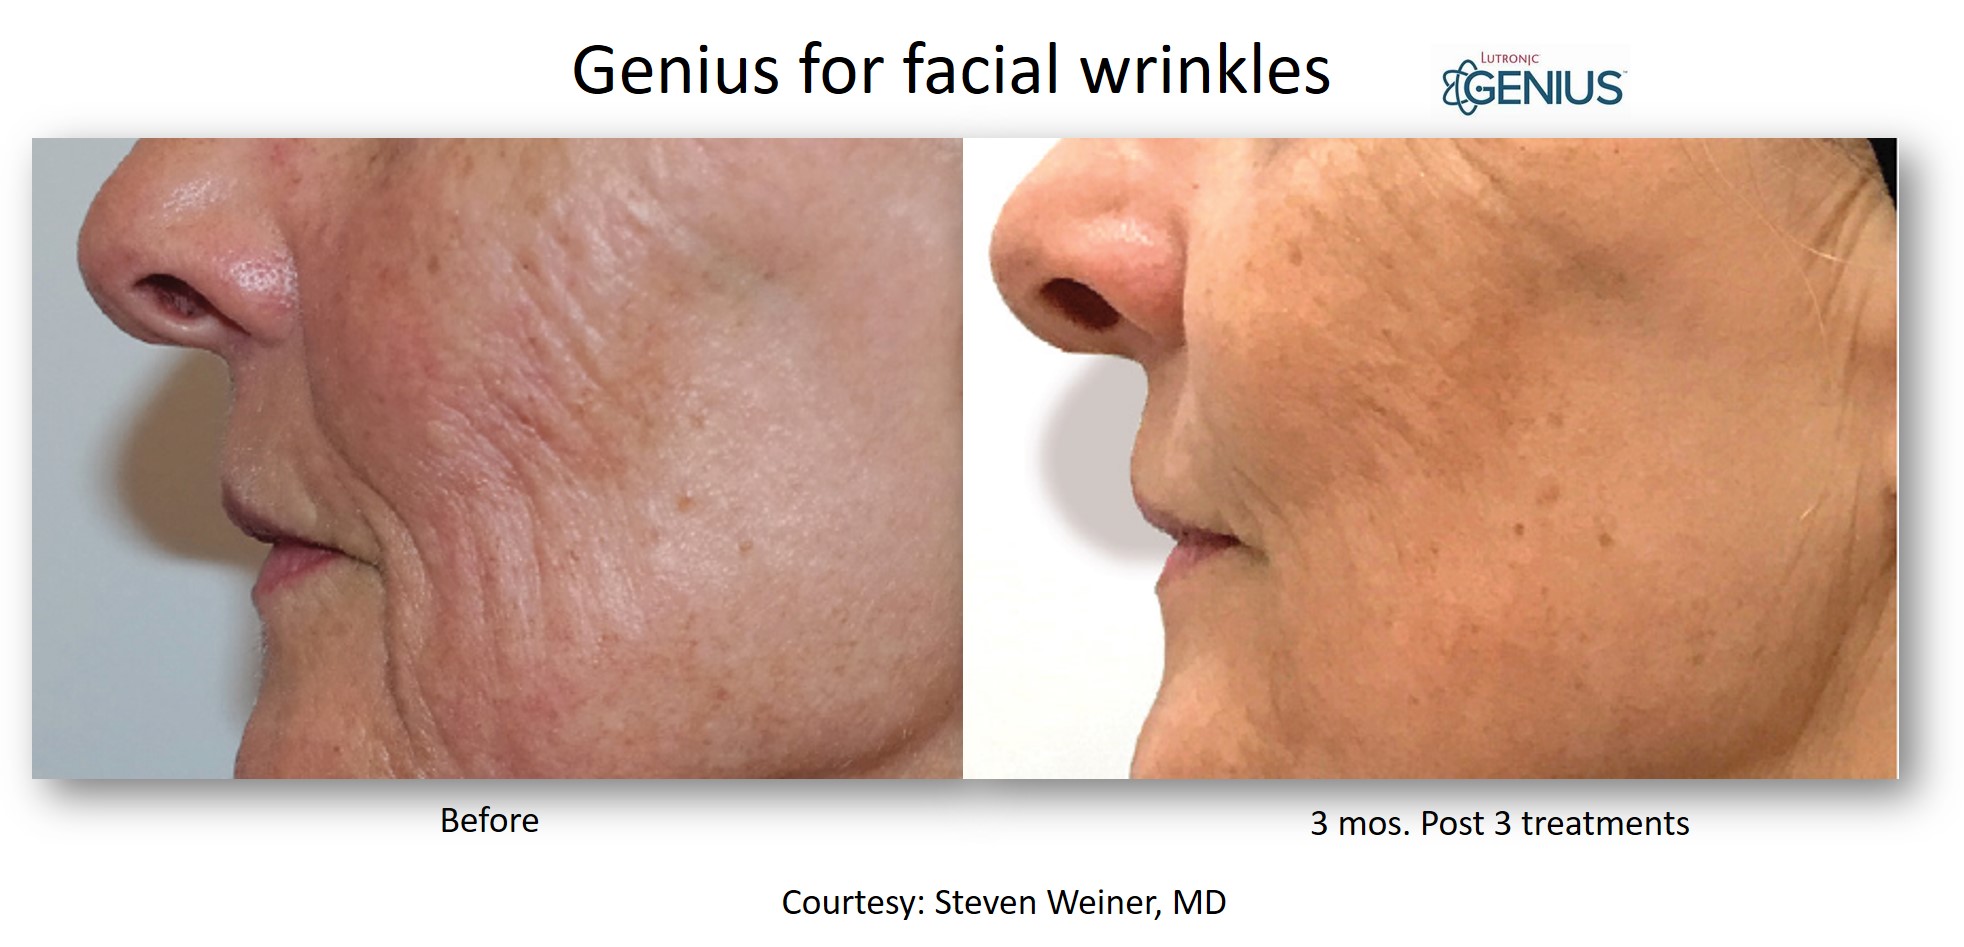 Genius_Weiner_Facial Wrinkles